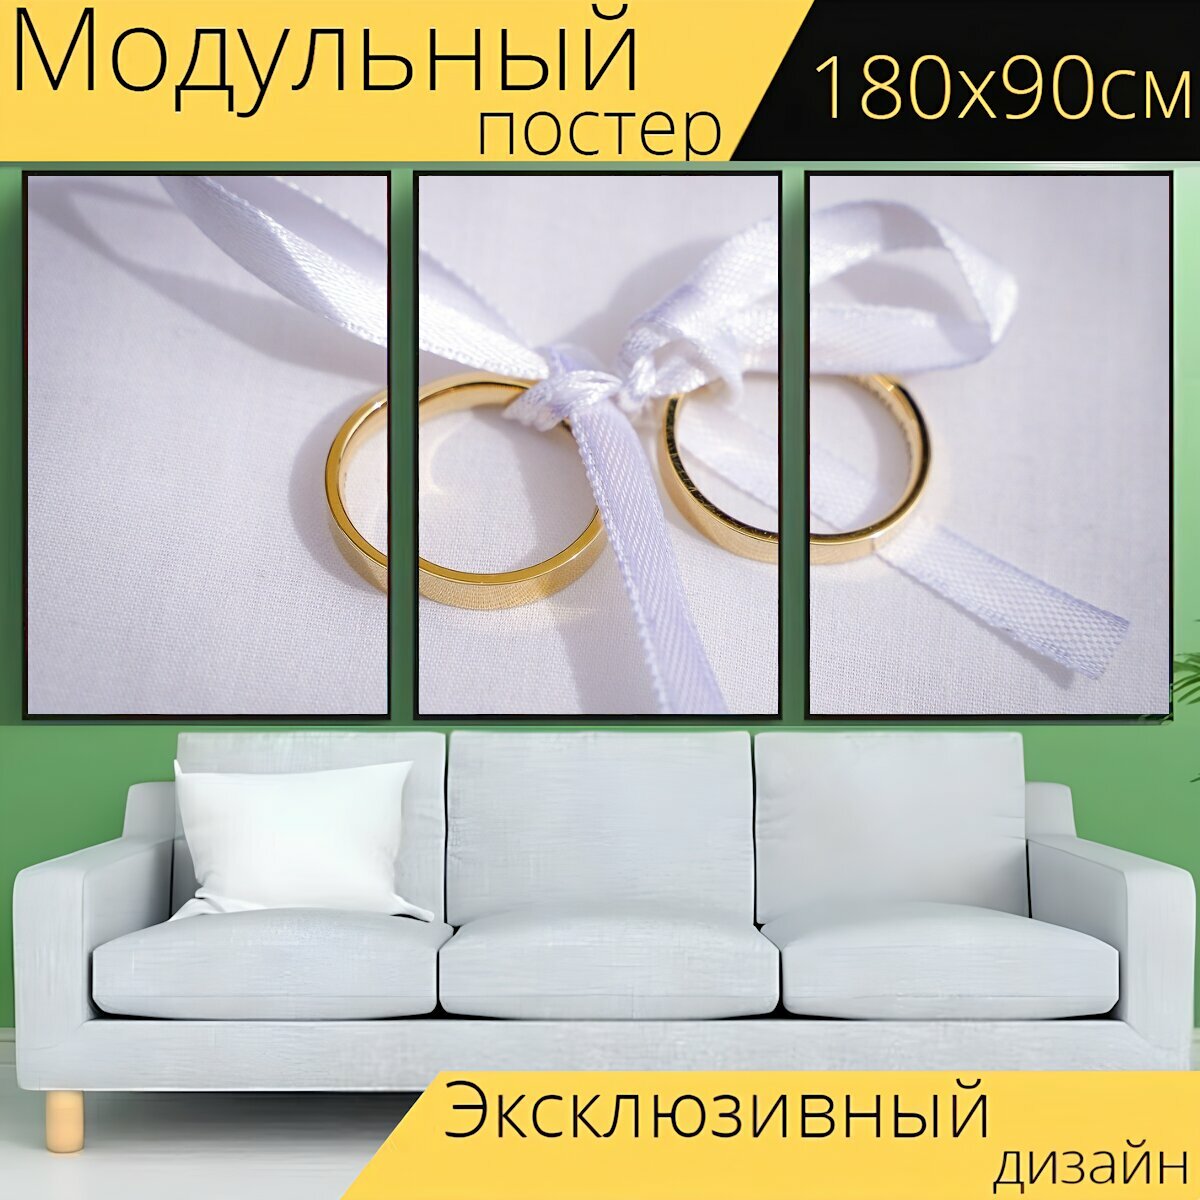 Модульный постер "Кольца, свадебные кольца, золотые кольца" 180 x 90 см. для интерьера